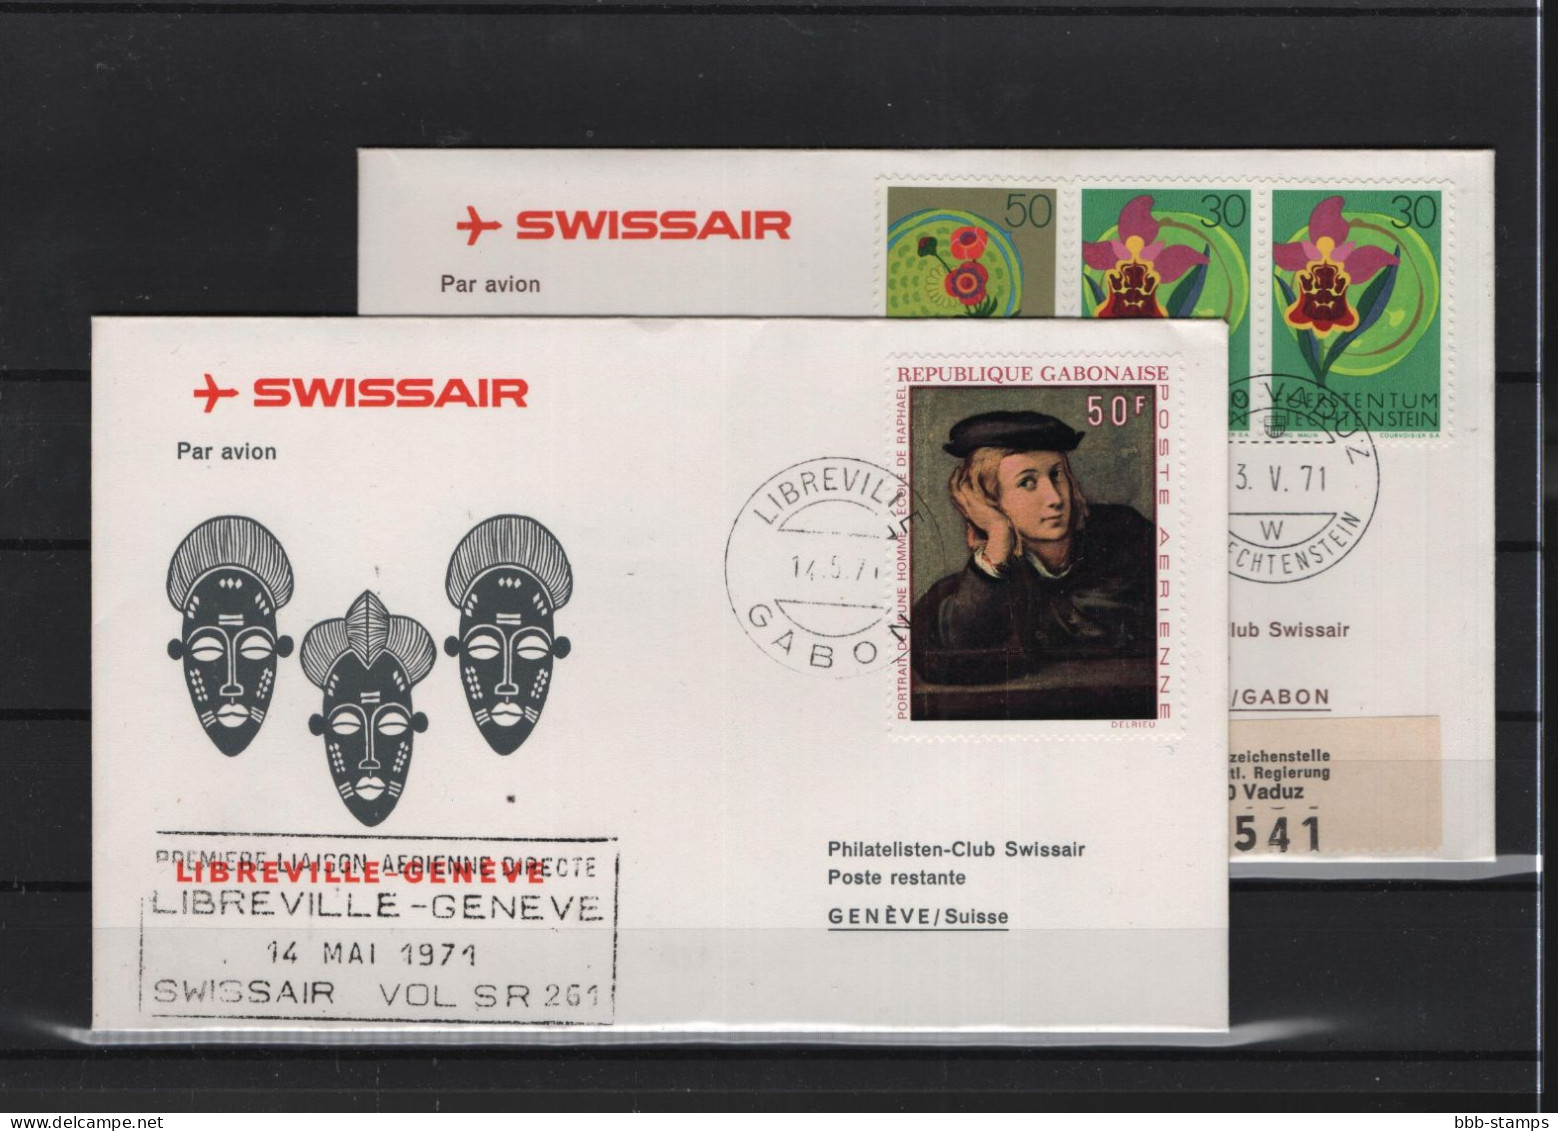 Schweiz Luftpost FFC Swissair 15.5.1971 Genf  Libreville VV - First Flight Covers